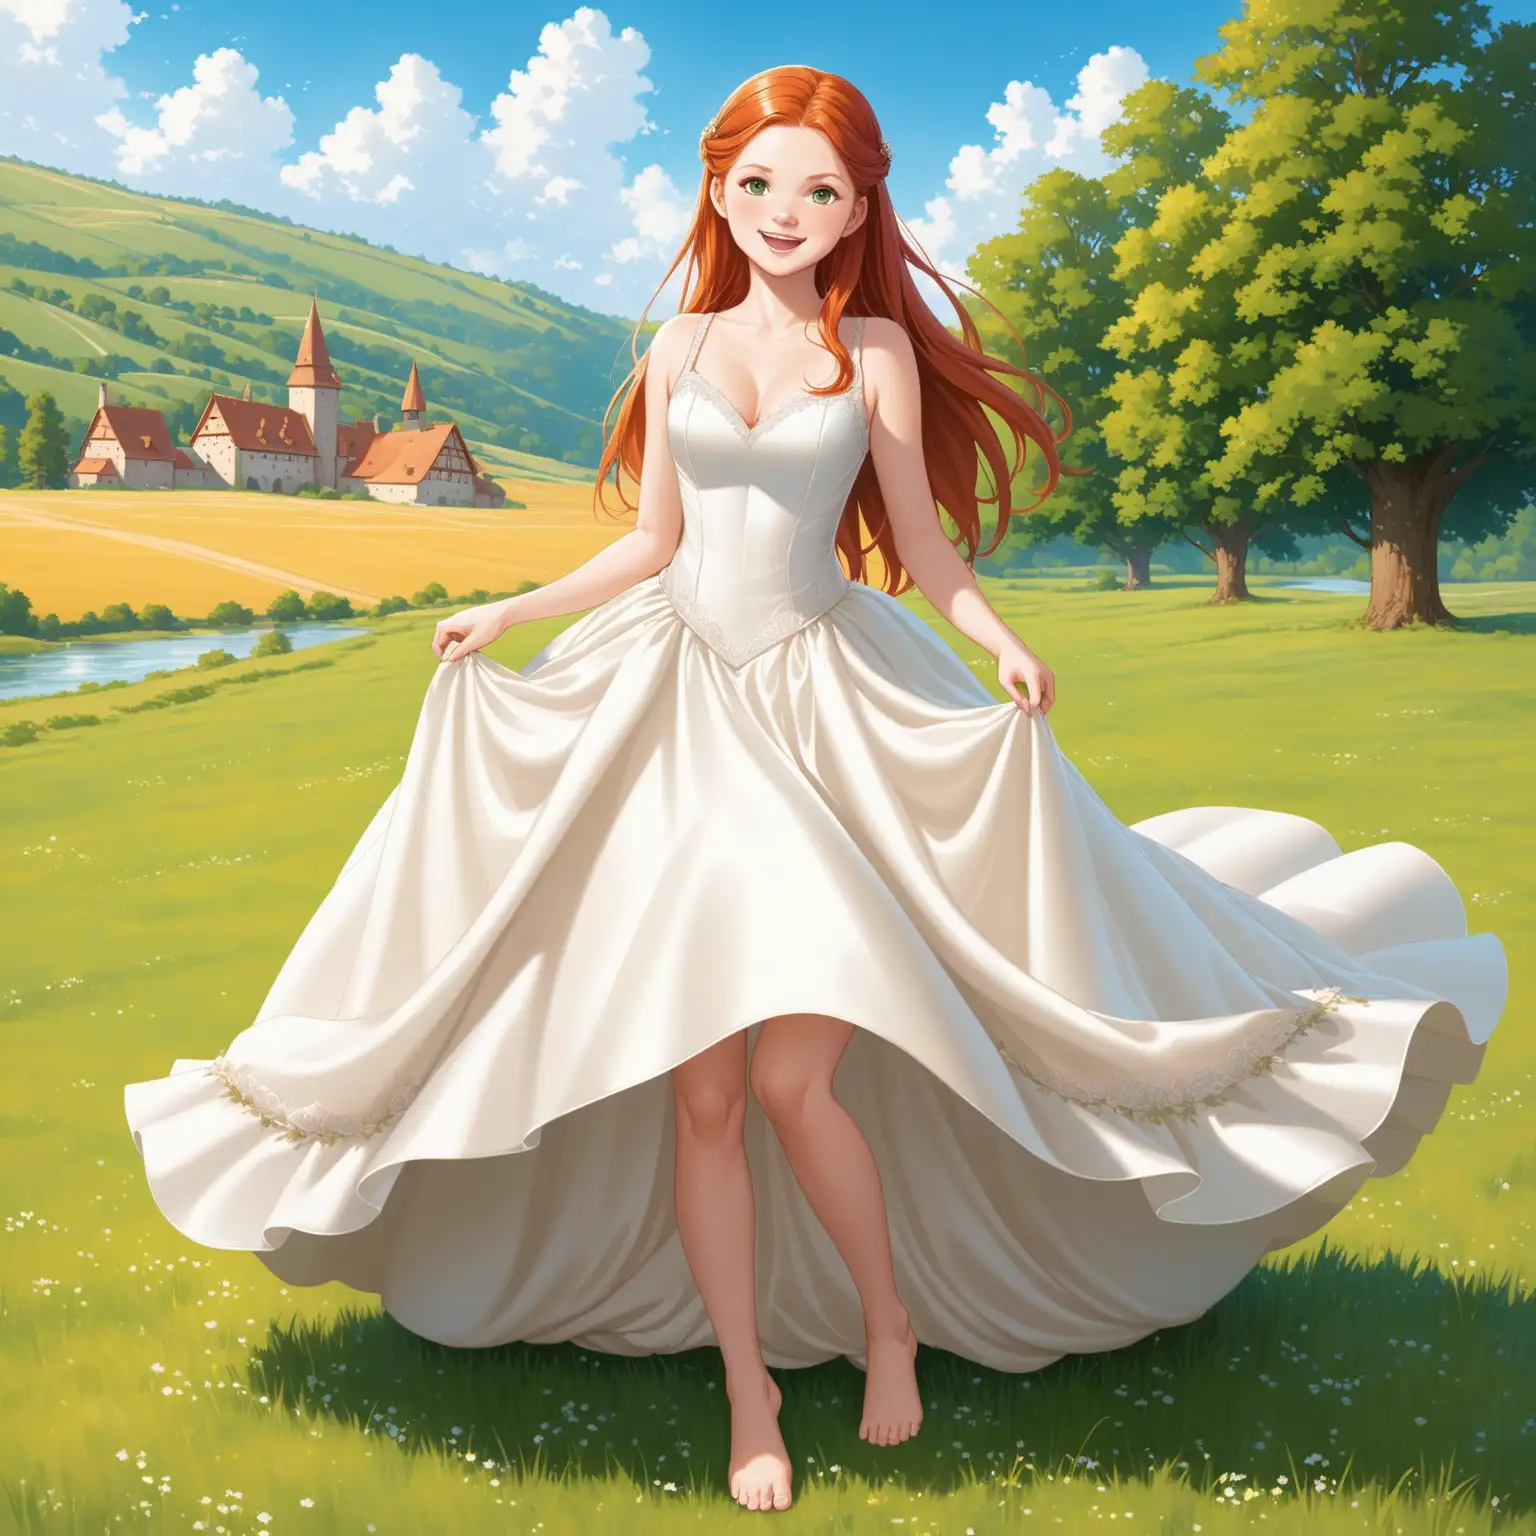 Dans campagne  avec  beau temps, vue dynamique en de face, pose très très suggestive sexuelle, Ginny Weasley, regarde amoureusement, Magnifique robe de princesse de Mariée sans manches ivoire satin duchesse relevé et pieds nus,